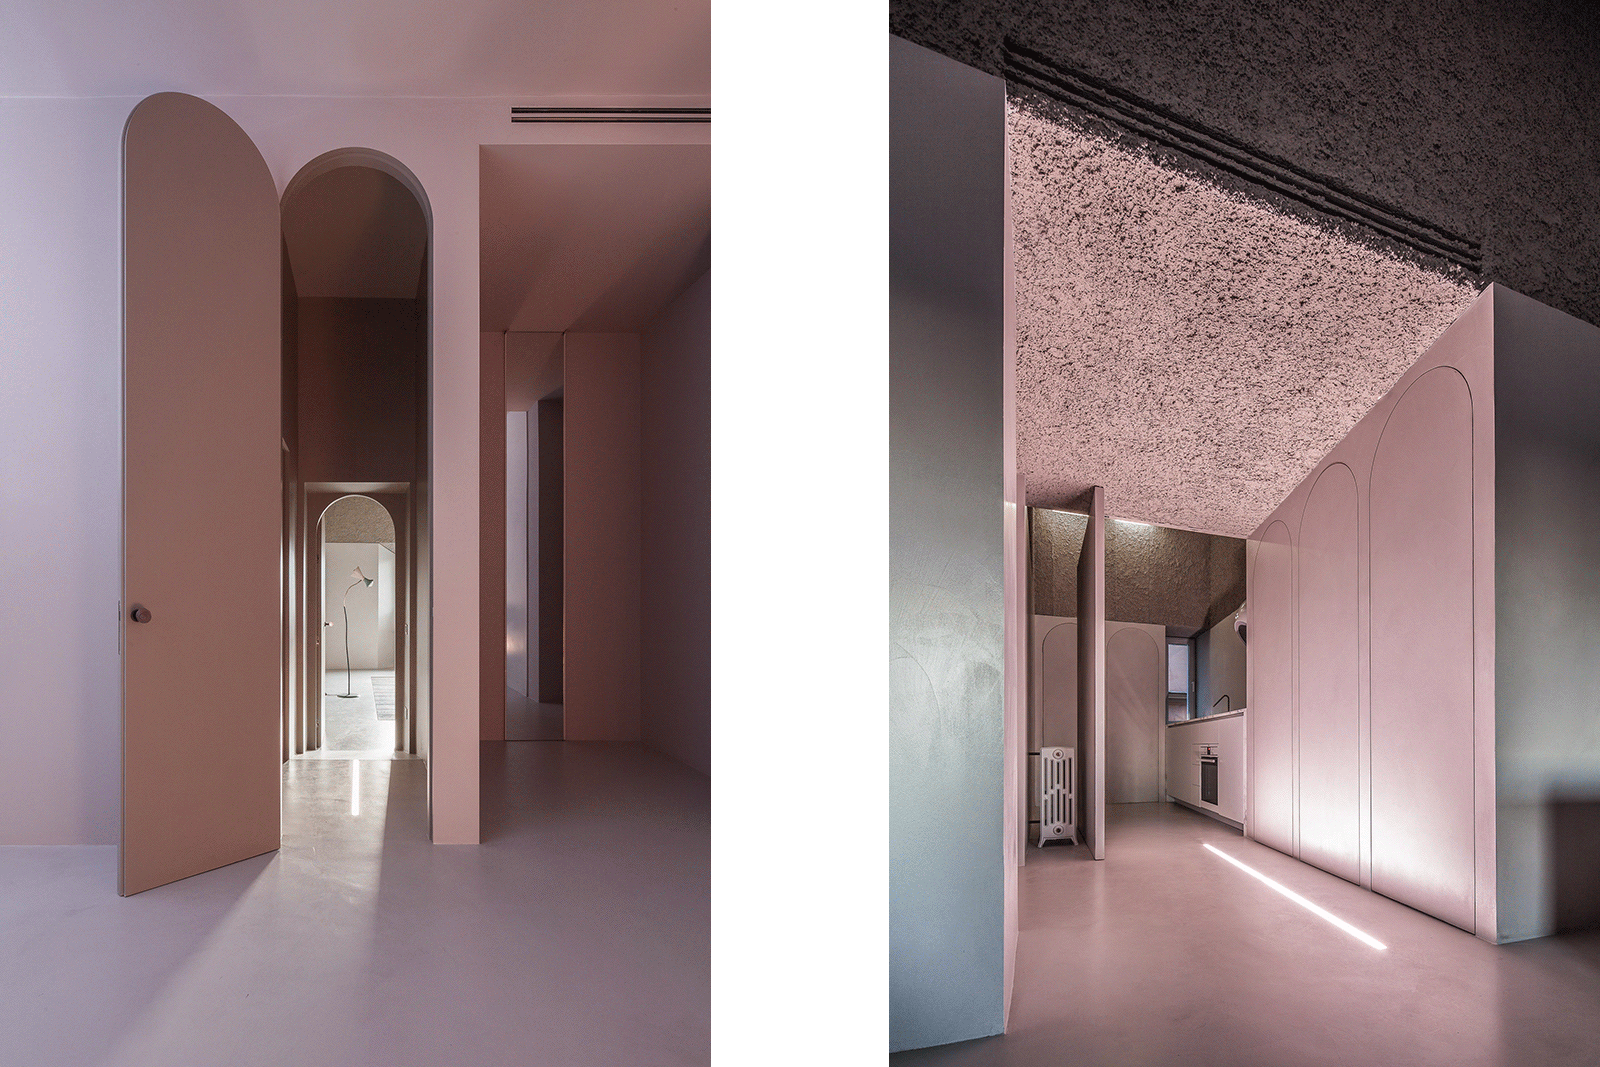 Antonino Cardillo, House of Dust, Rome, Italy